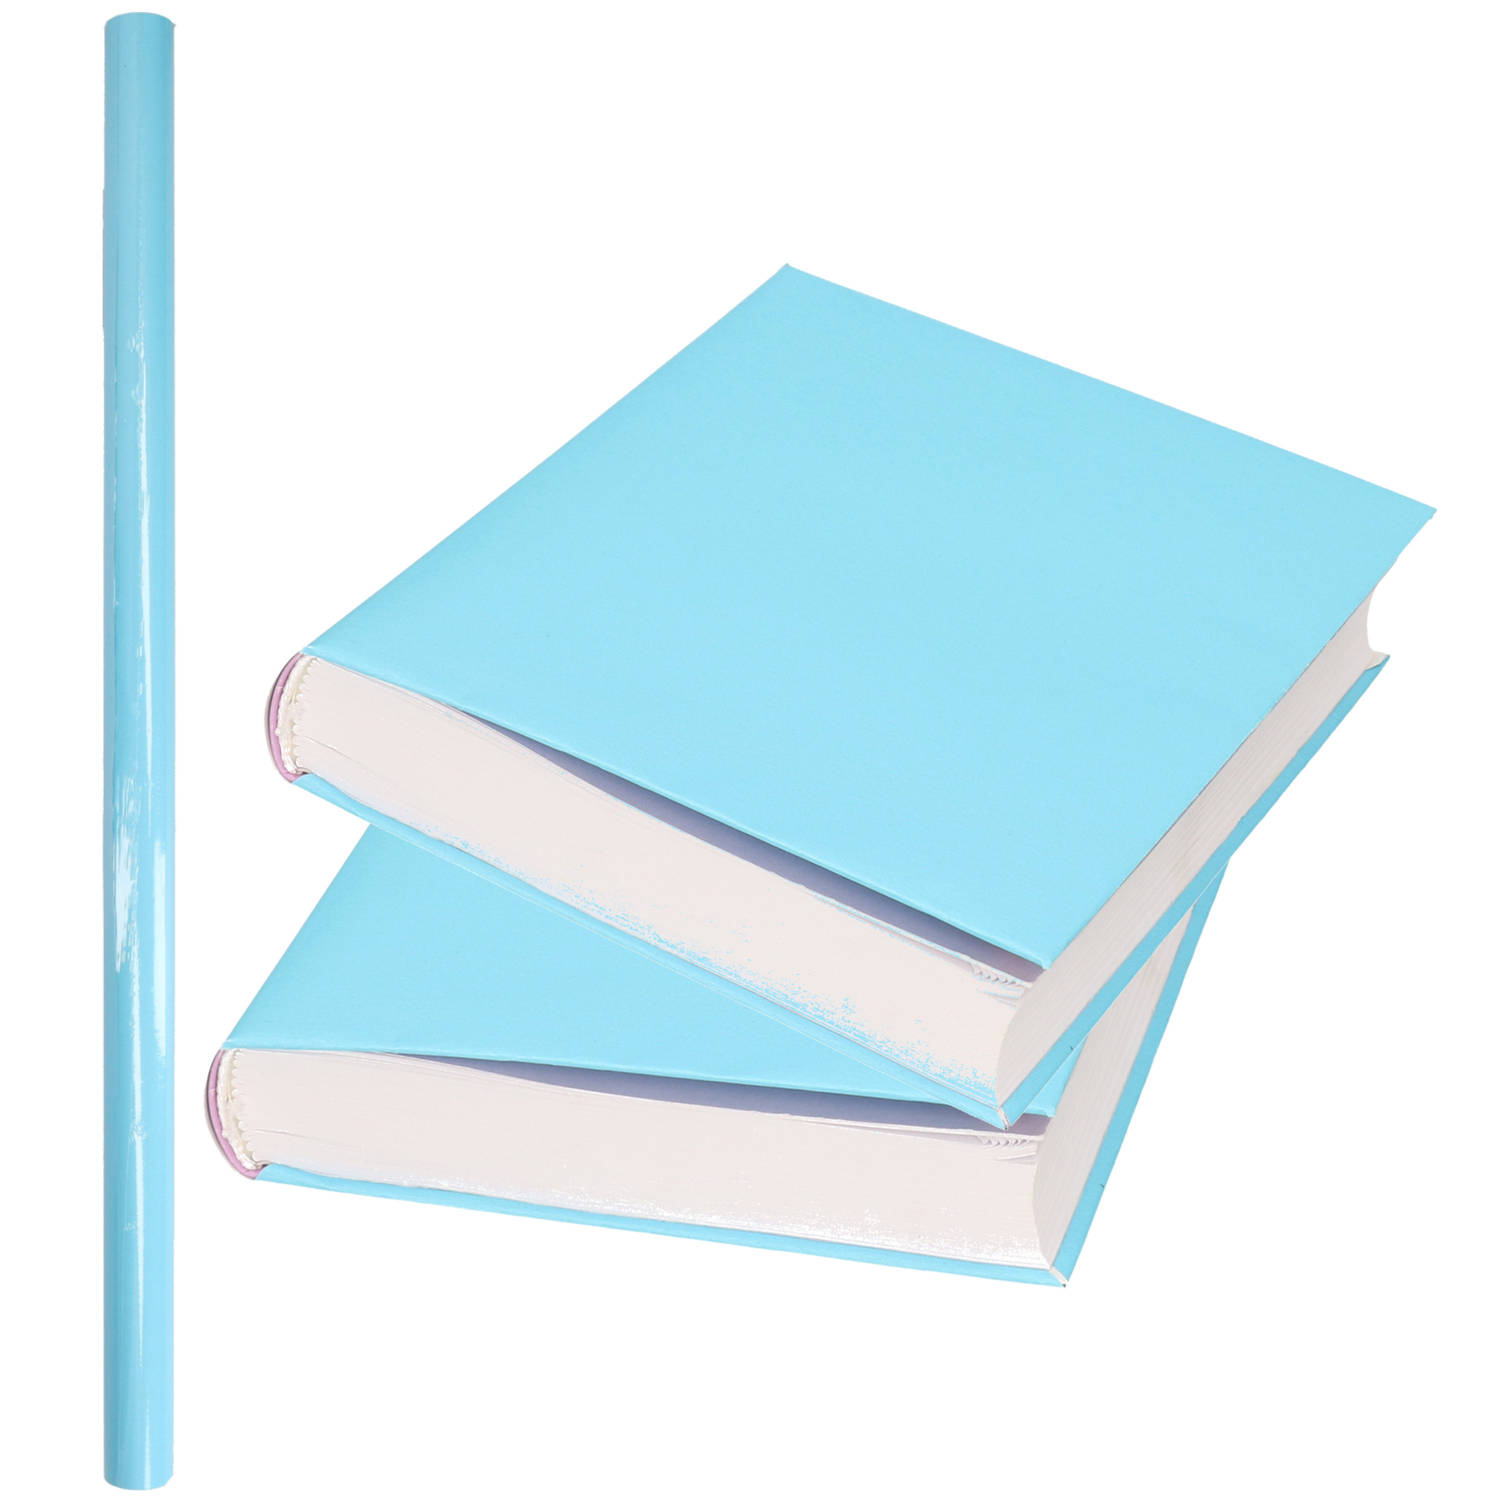 1x Rollen kadopapier / kaftpapier 200 x 70 cm - pastel blauw - kaftpapier voor schoolboeken / boekenkaften